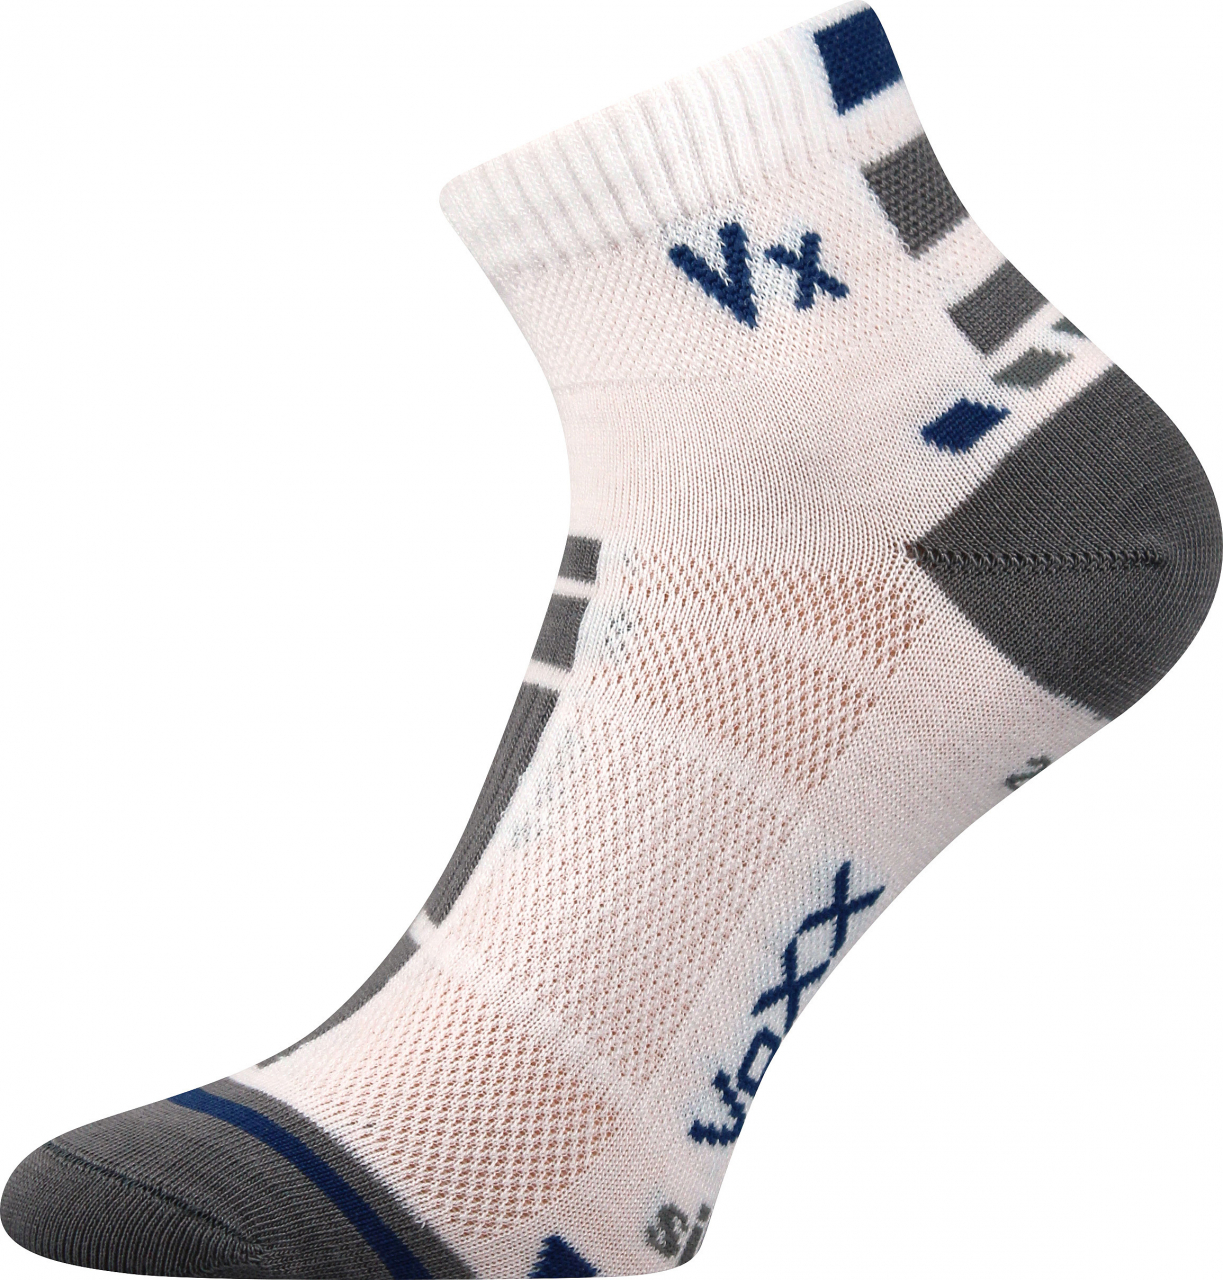 Ponožky antibakteriální Voxx Mayor silproX - bílé-šedé, 43-46